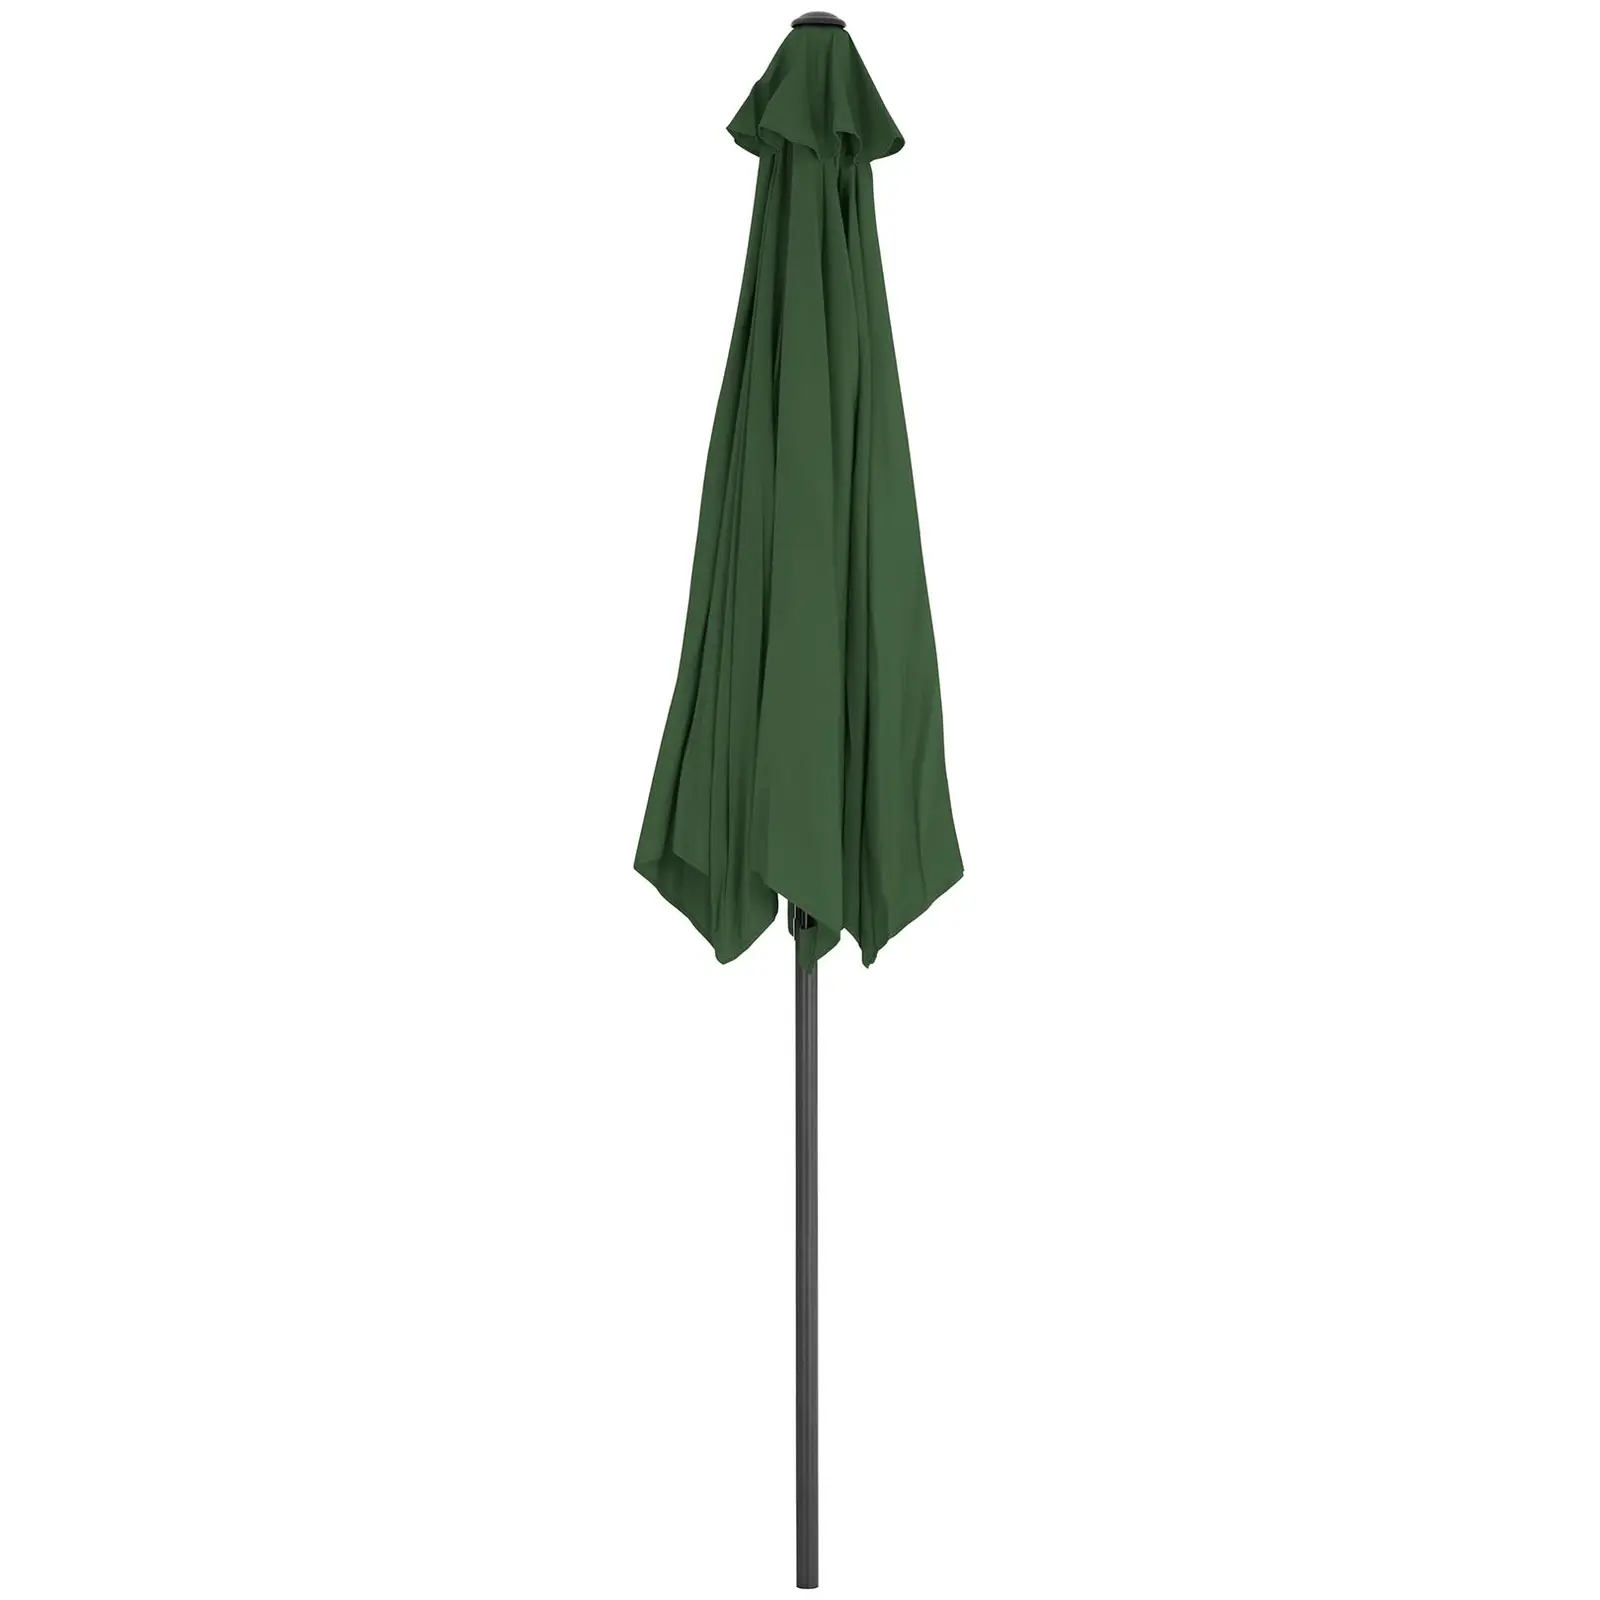 B-zboží Velký slunečník - zelený - šestihranný - Ø 270 cm - s náklonem